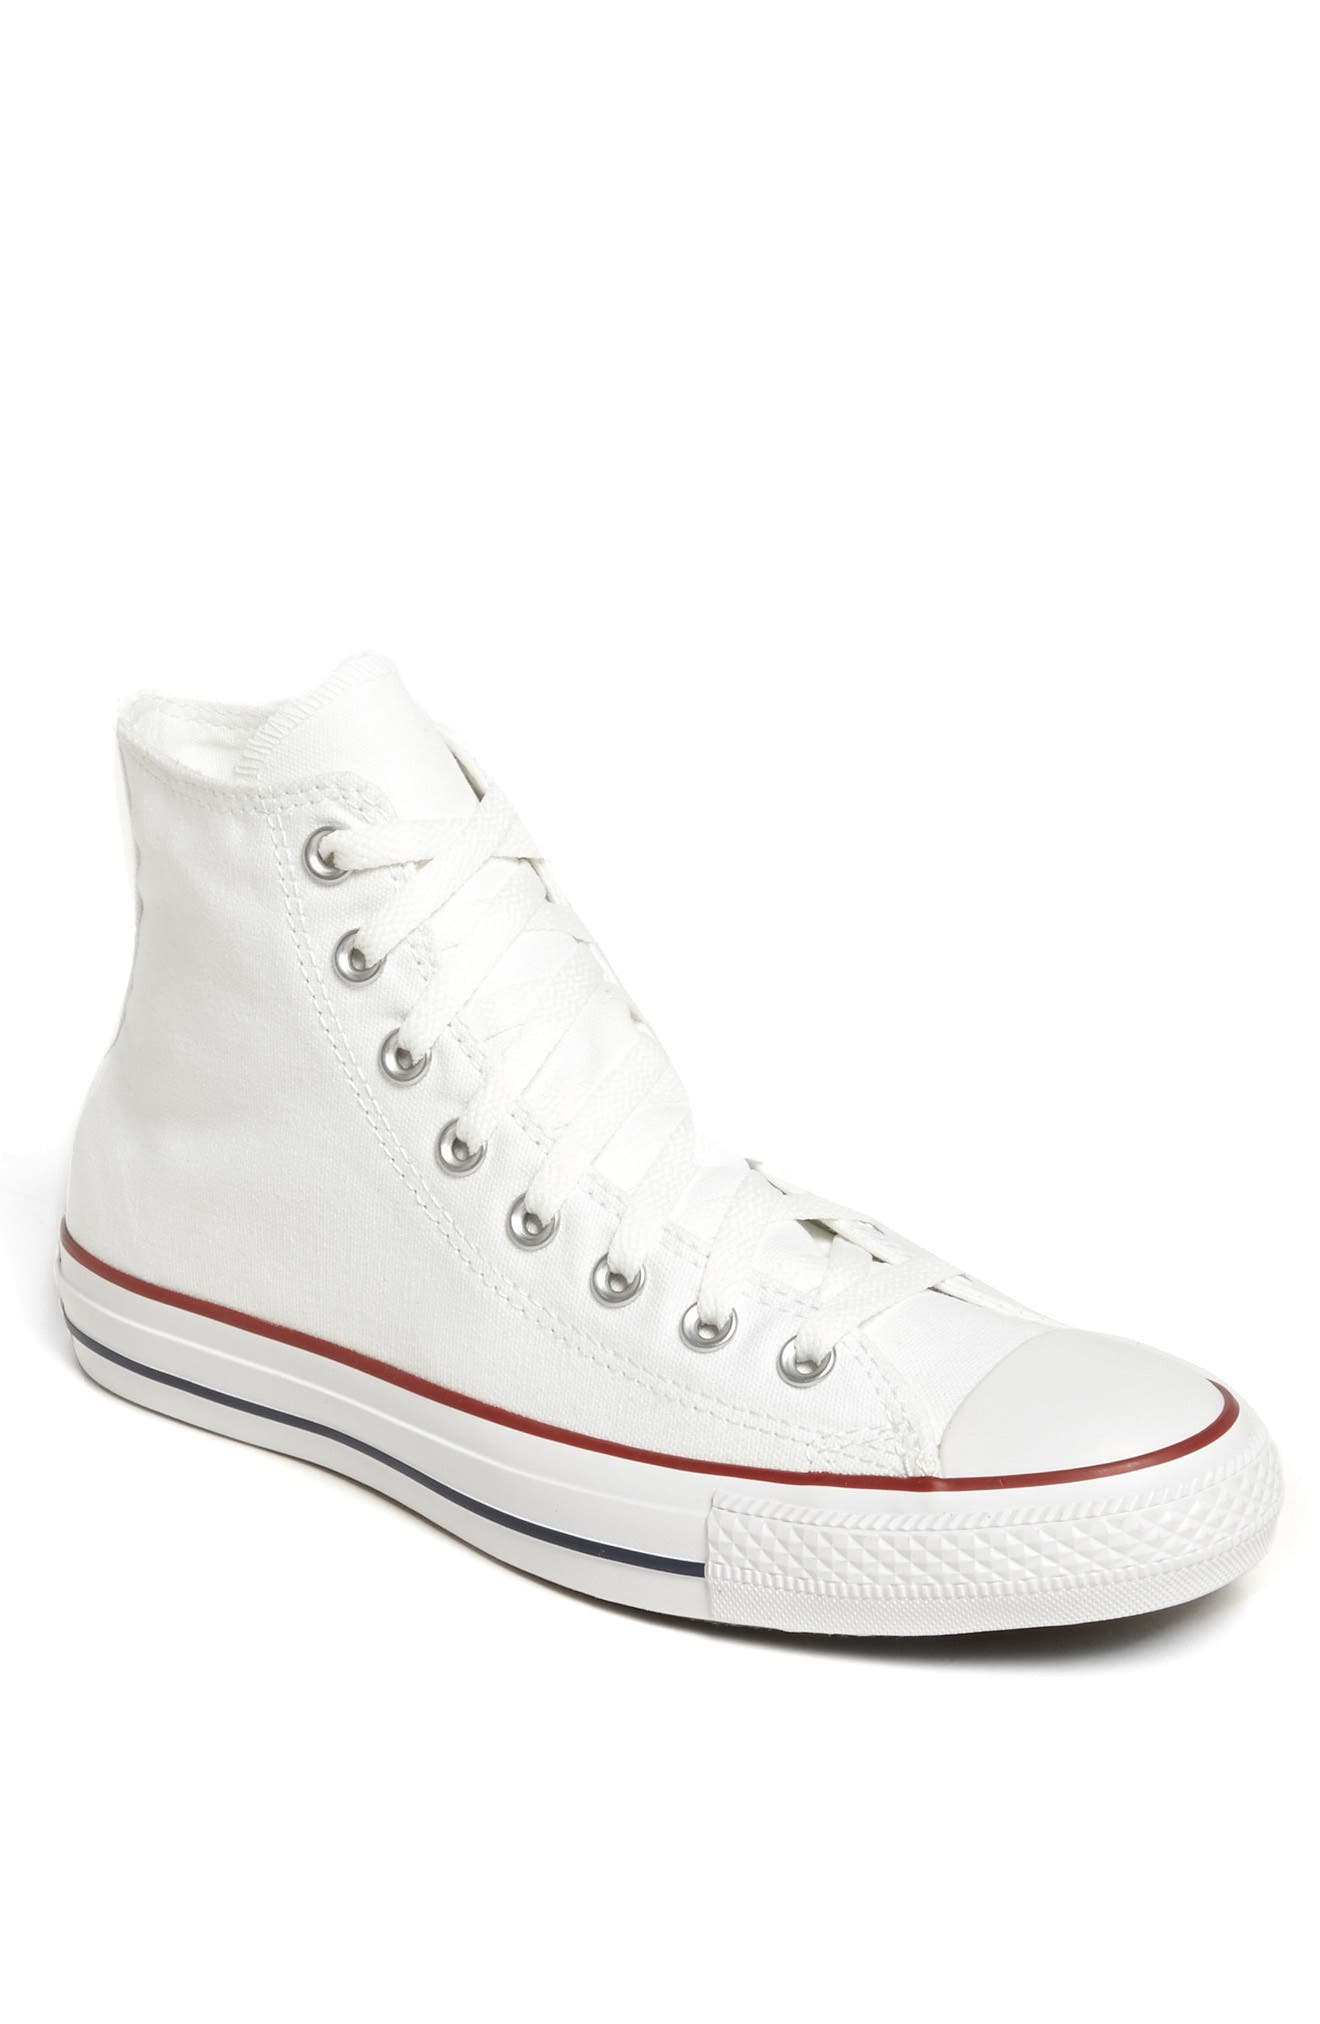 white men's converse shoes